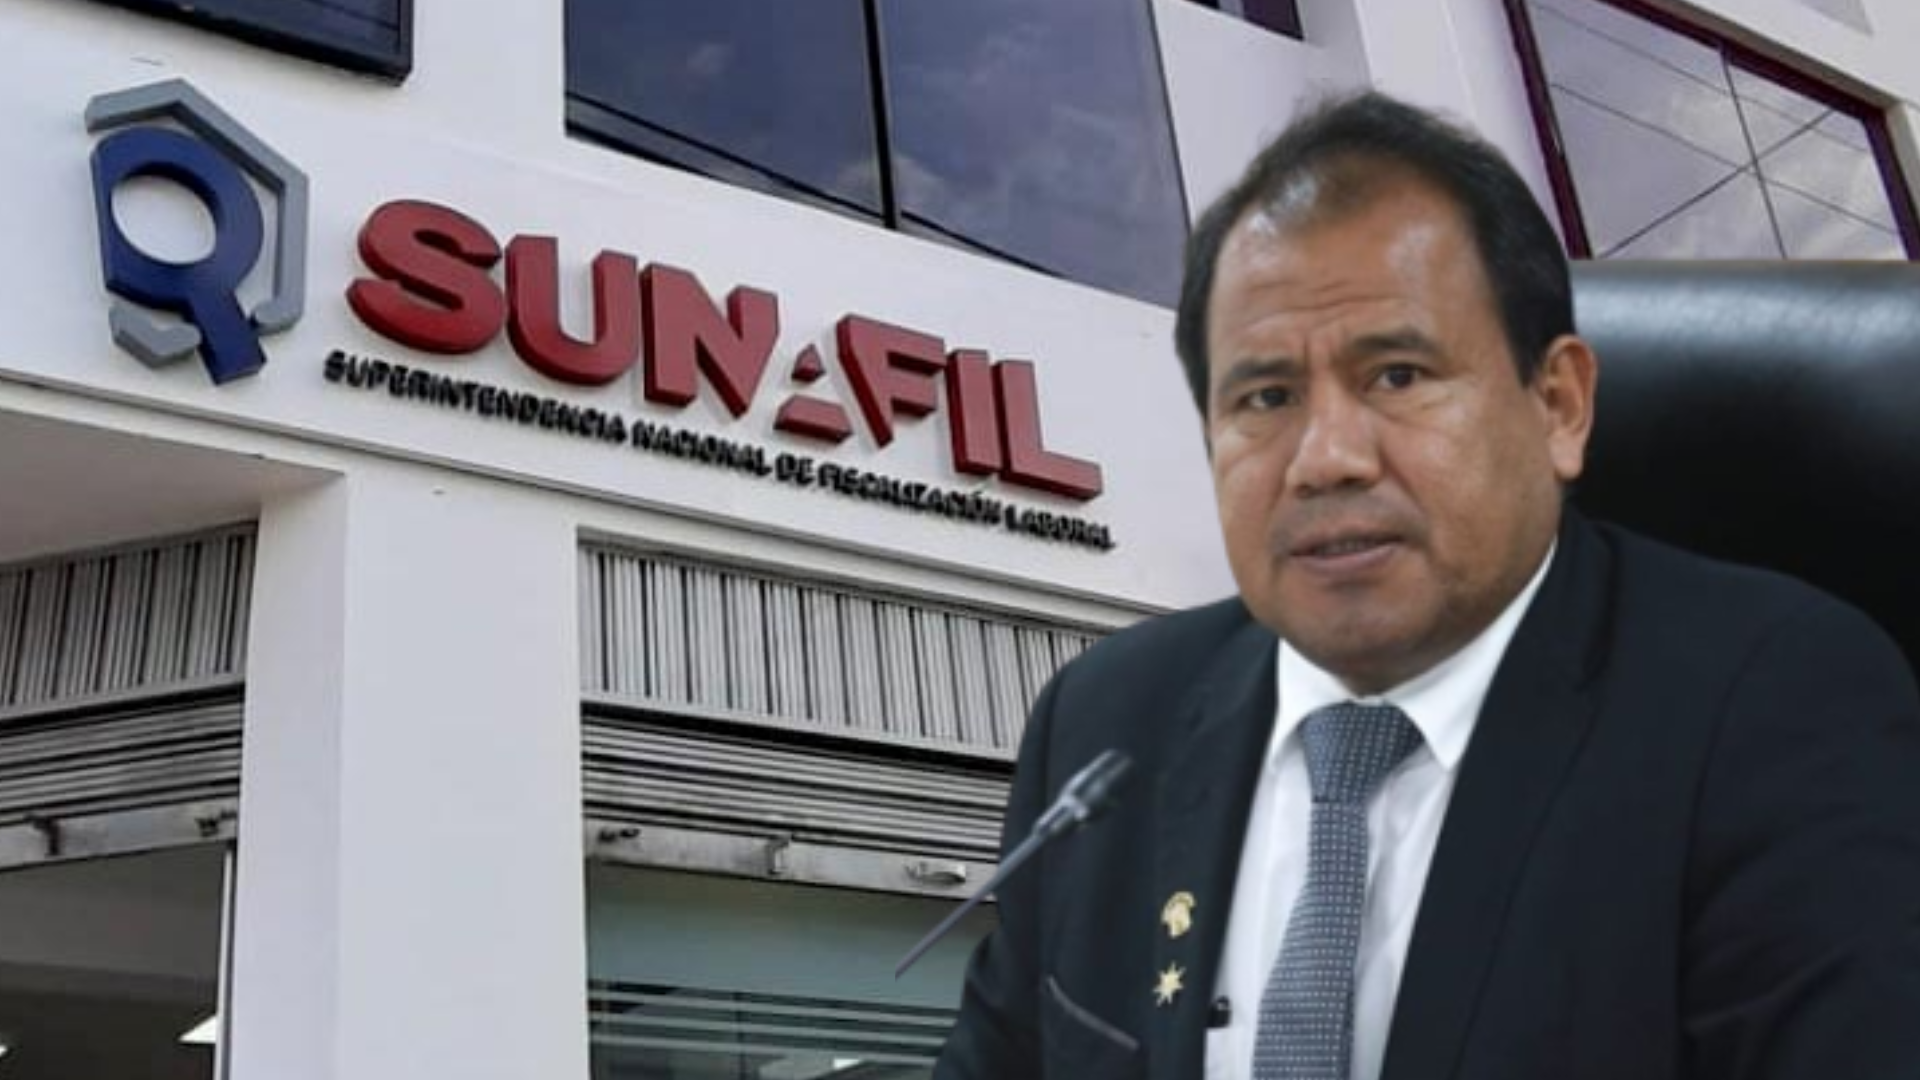 Caso Edgar Tello: Sunafil interviene y ordena inspección ante denuncia de trabajadora por hostigamiento laboral